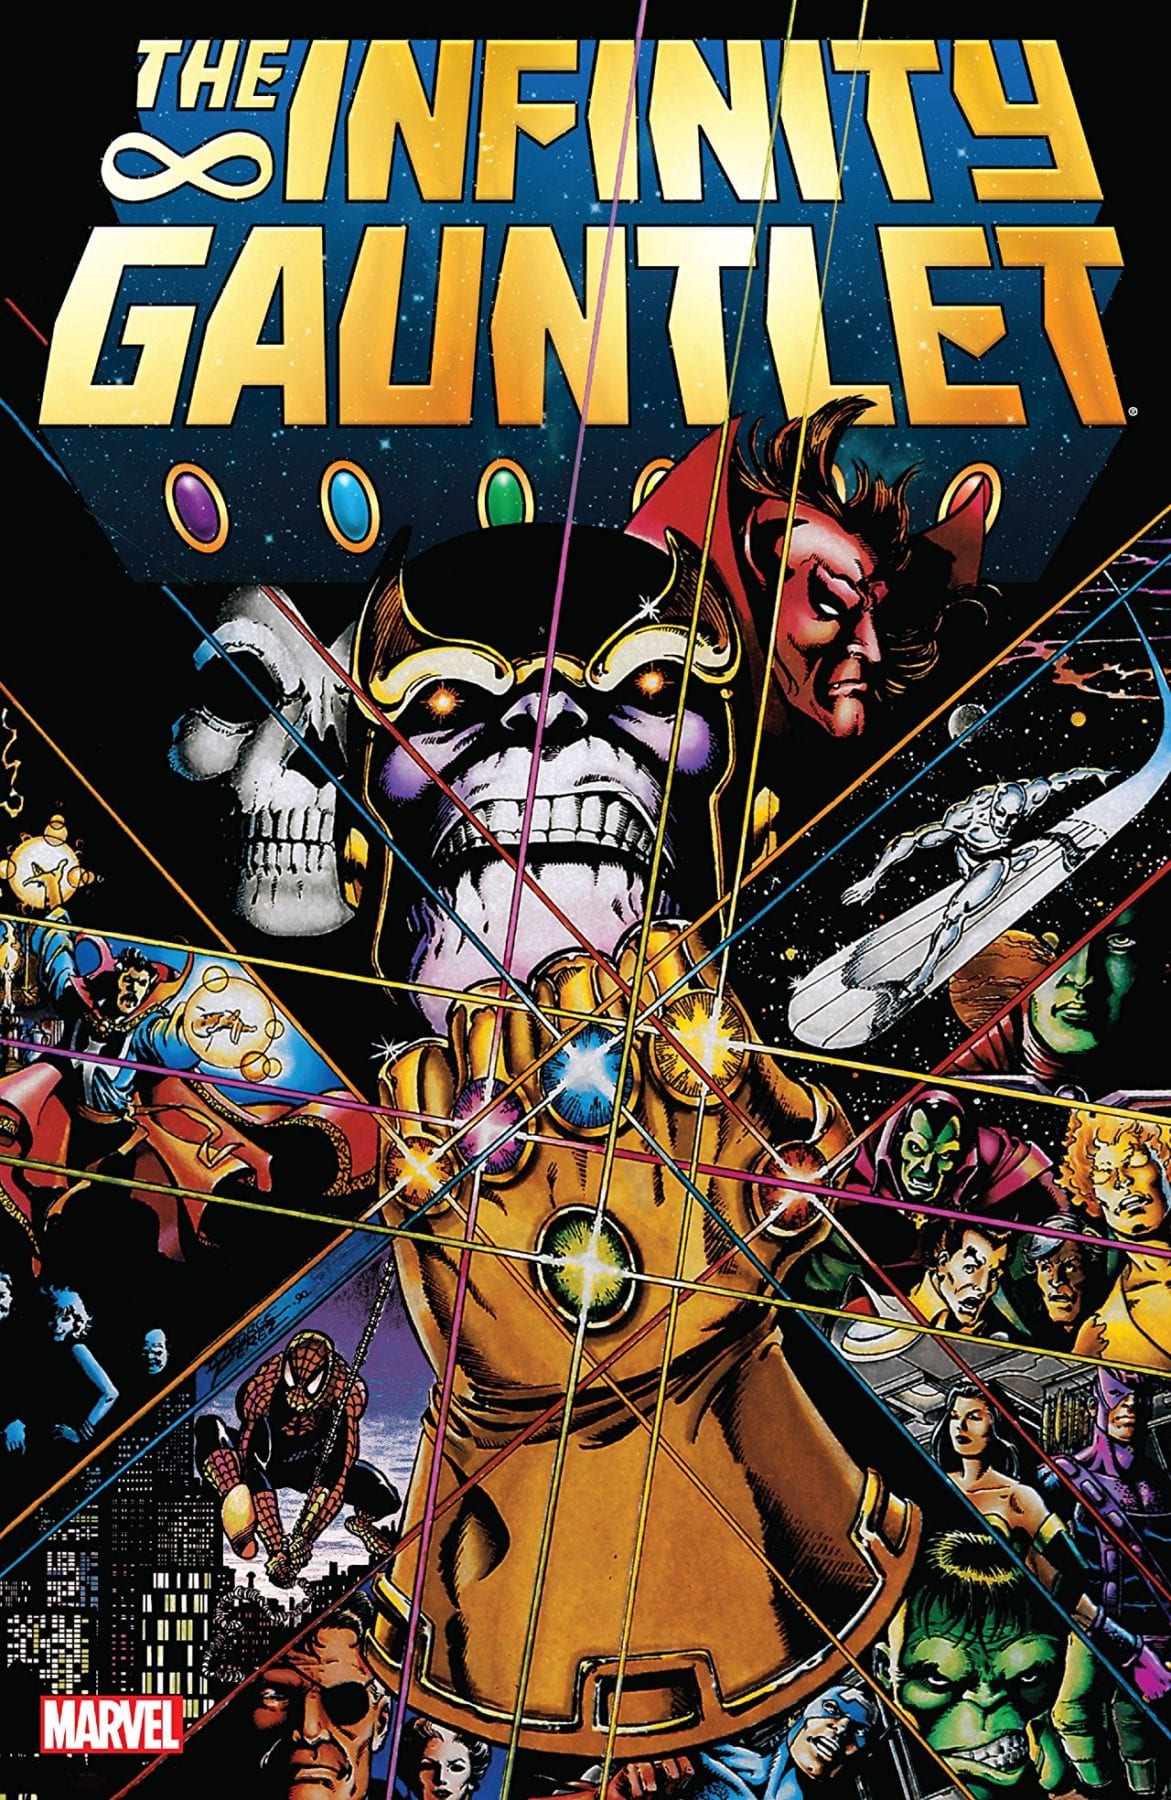 Action Comics # 1000 y The Infinity Gauntlet son los mejores cómics y novelas gráficas de 2018